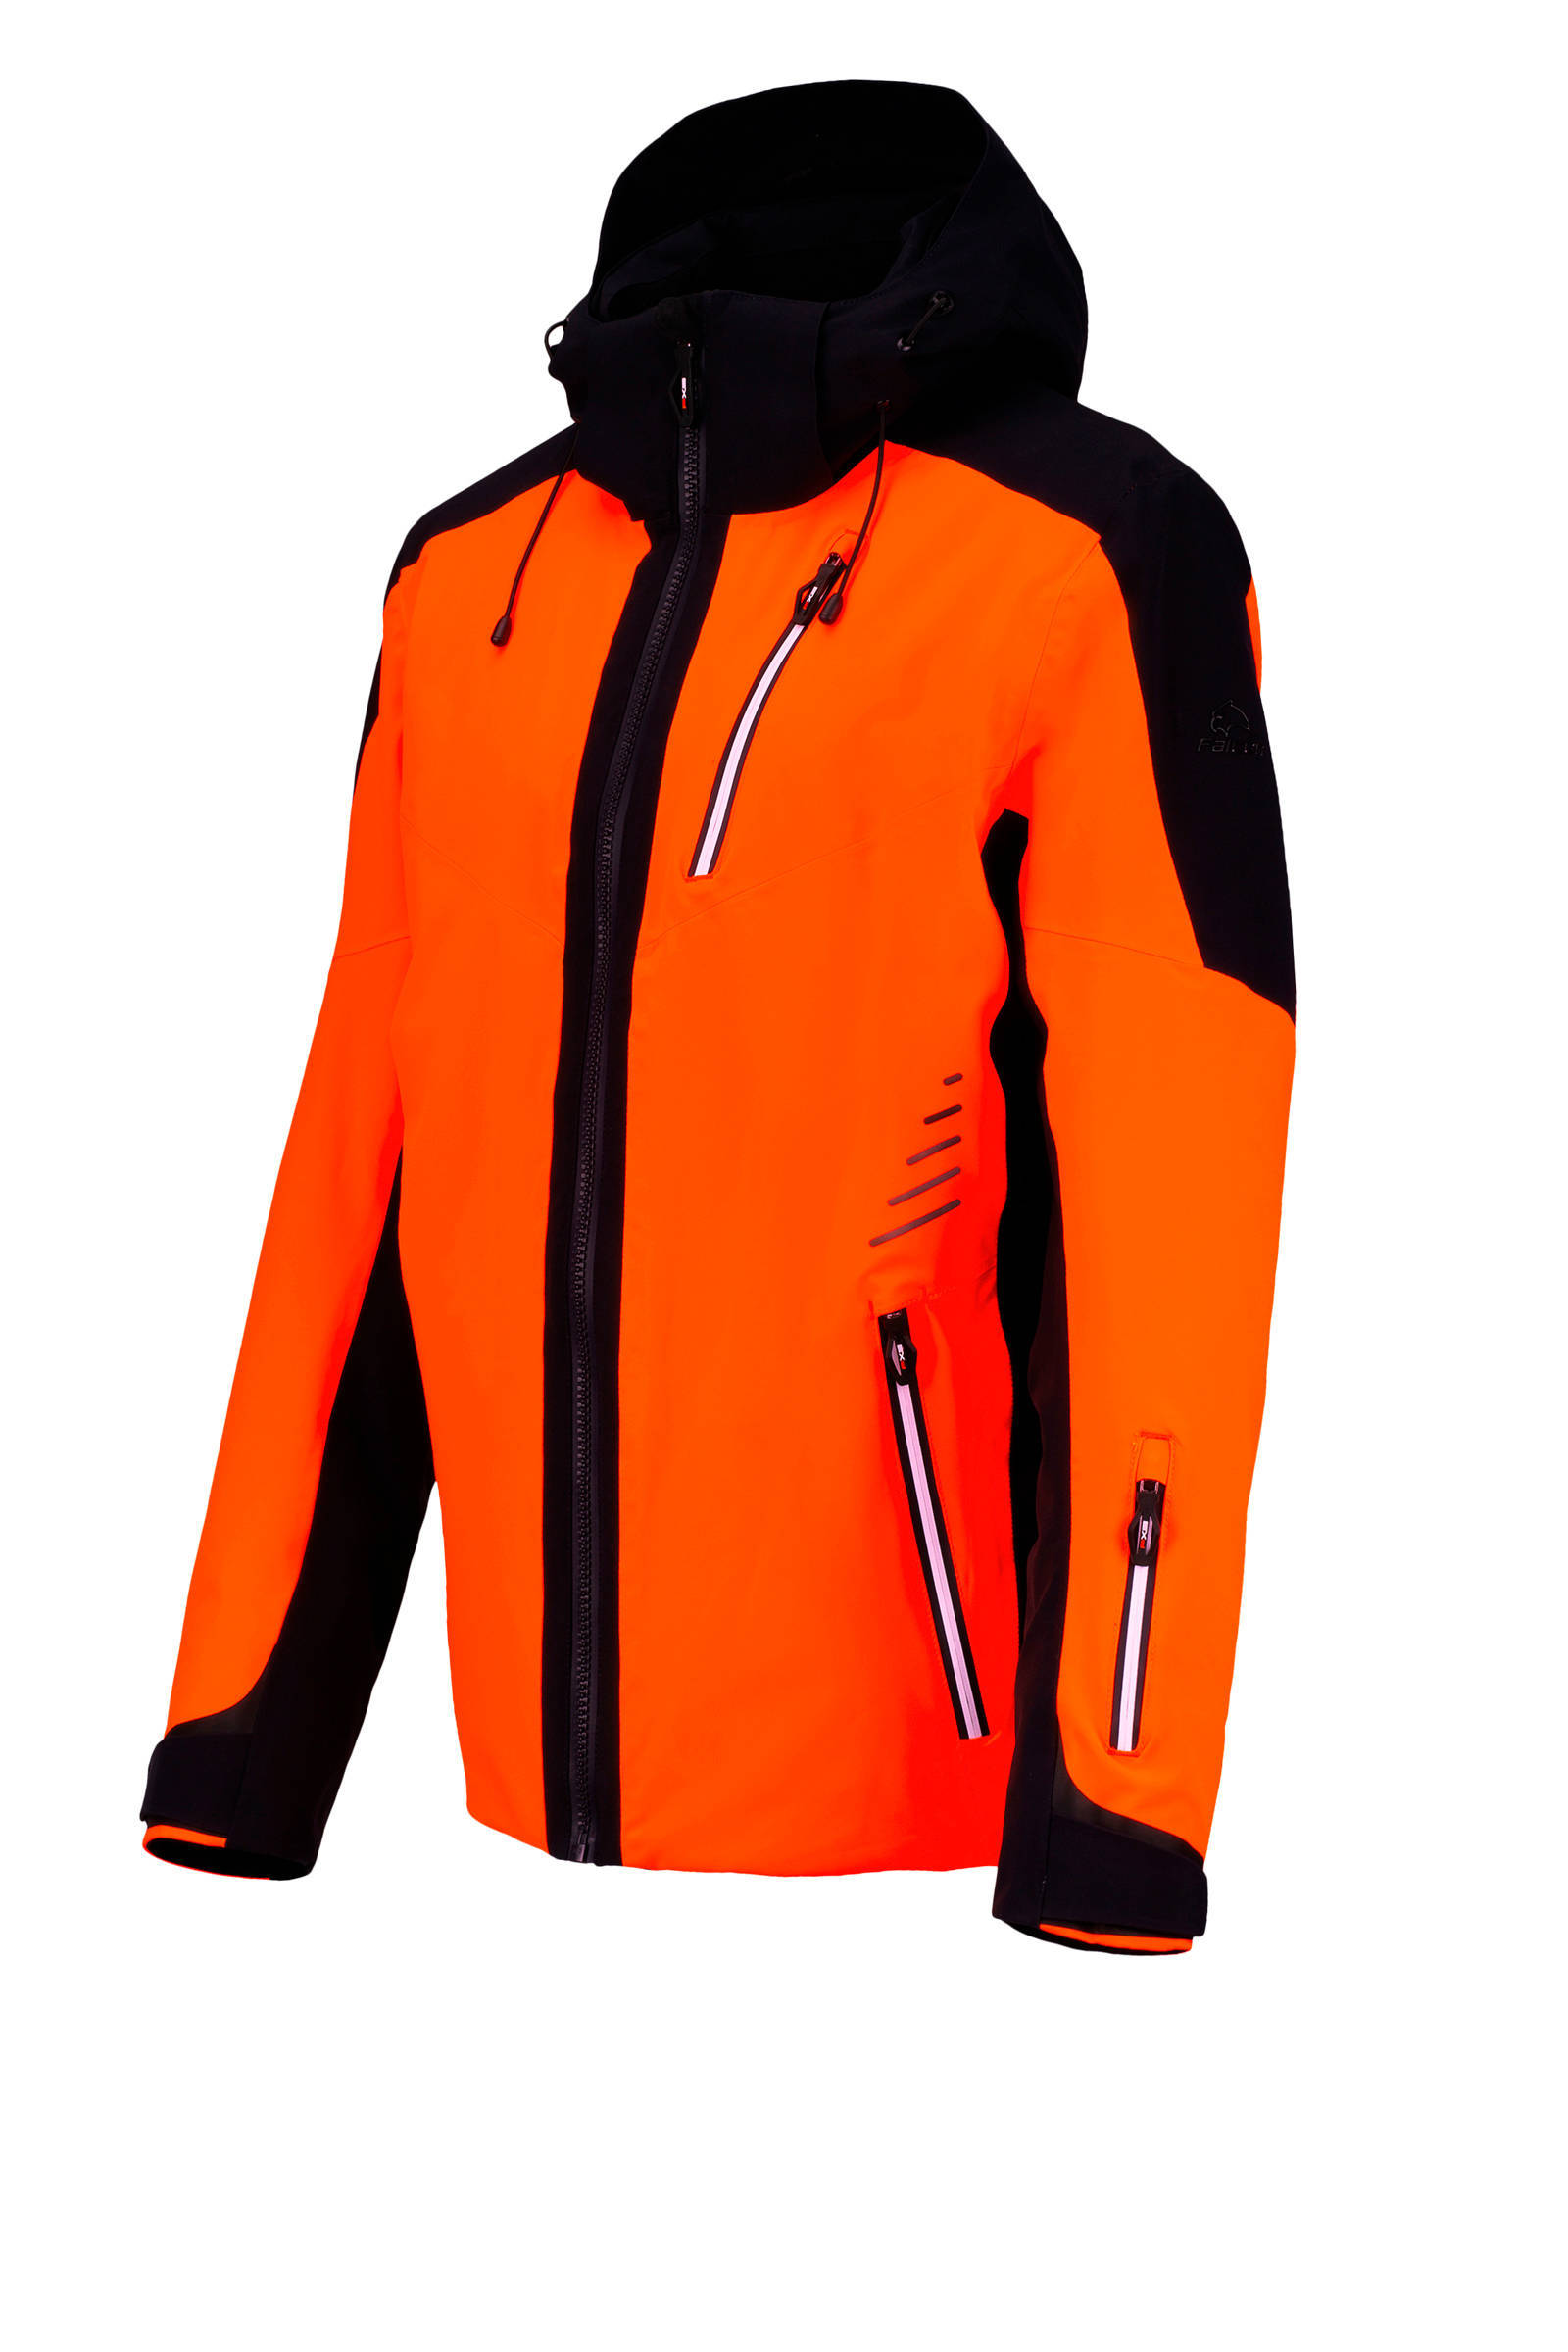 Falcon ski jack Sheldon oranje/zwart online kopen